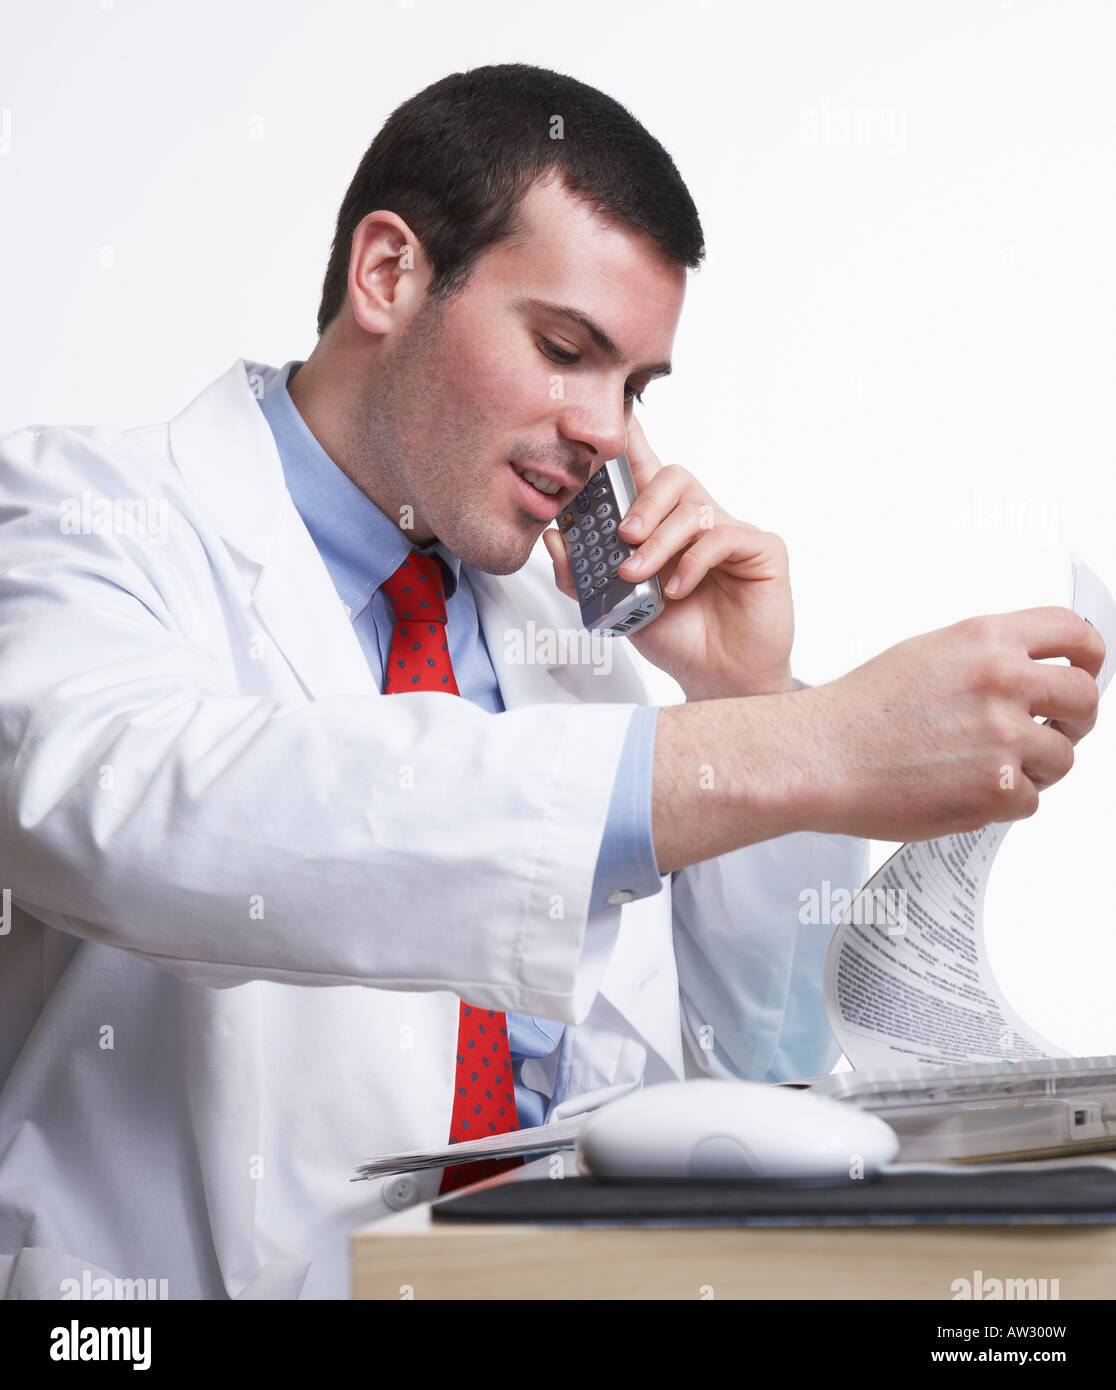 Doktor der Medizin durch Diagramm auf das drahtlose Telefon suchen geduldige Beratung und Behandlung Stockfoto